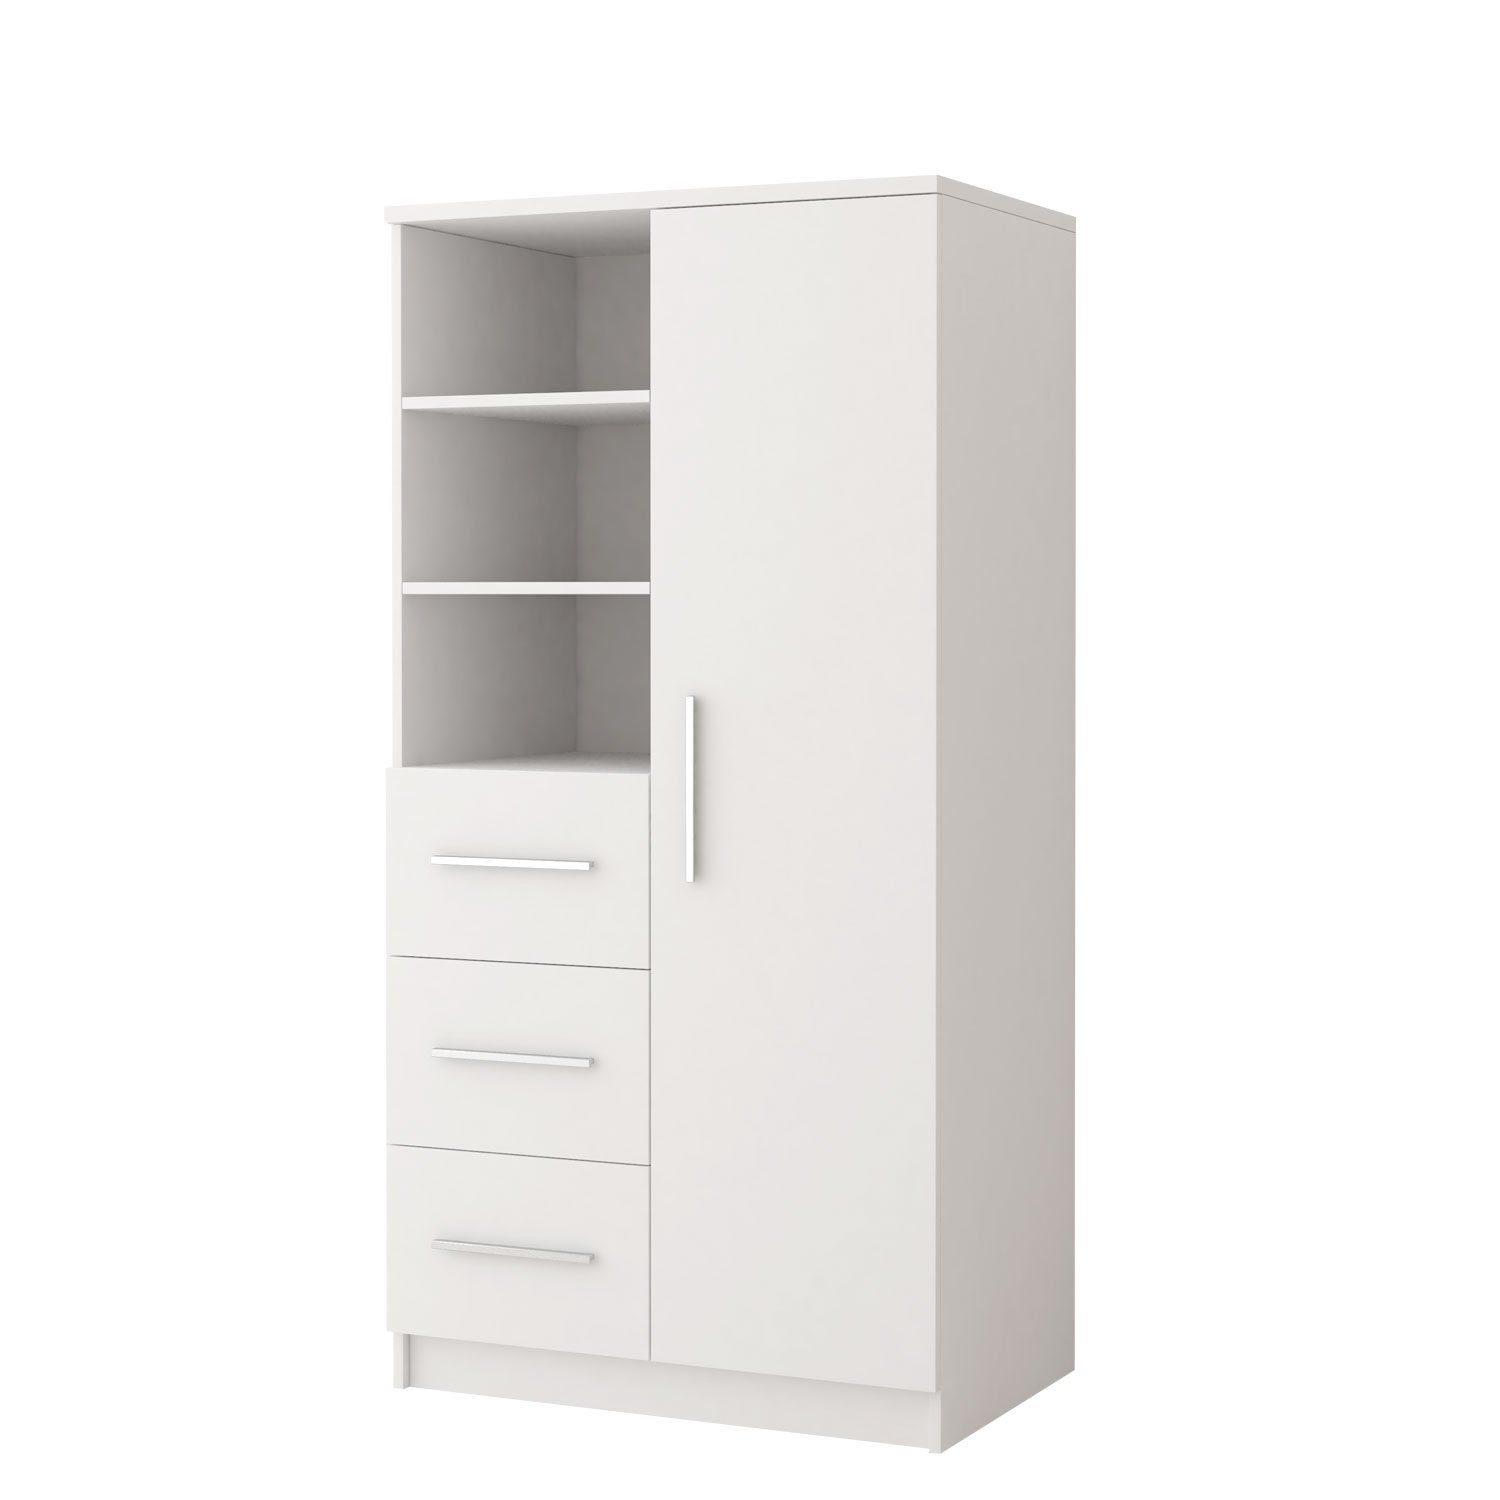 Polini Home Raumteilerregal Schrankregal 80 x 160 x 40 cm Weiß mit silbernen Griffen Colour Seri weiß-silber | Weiß-silber